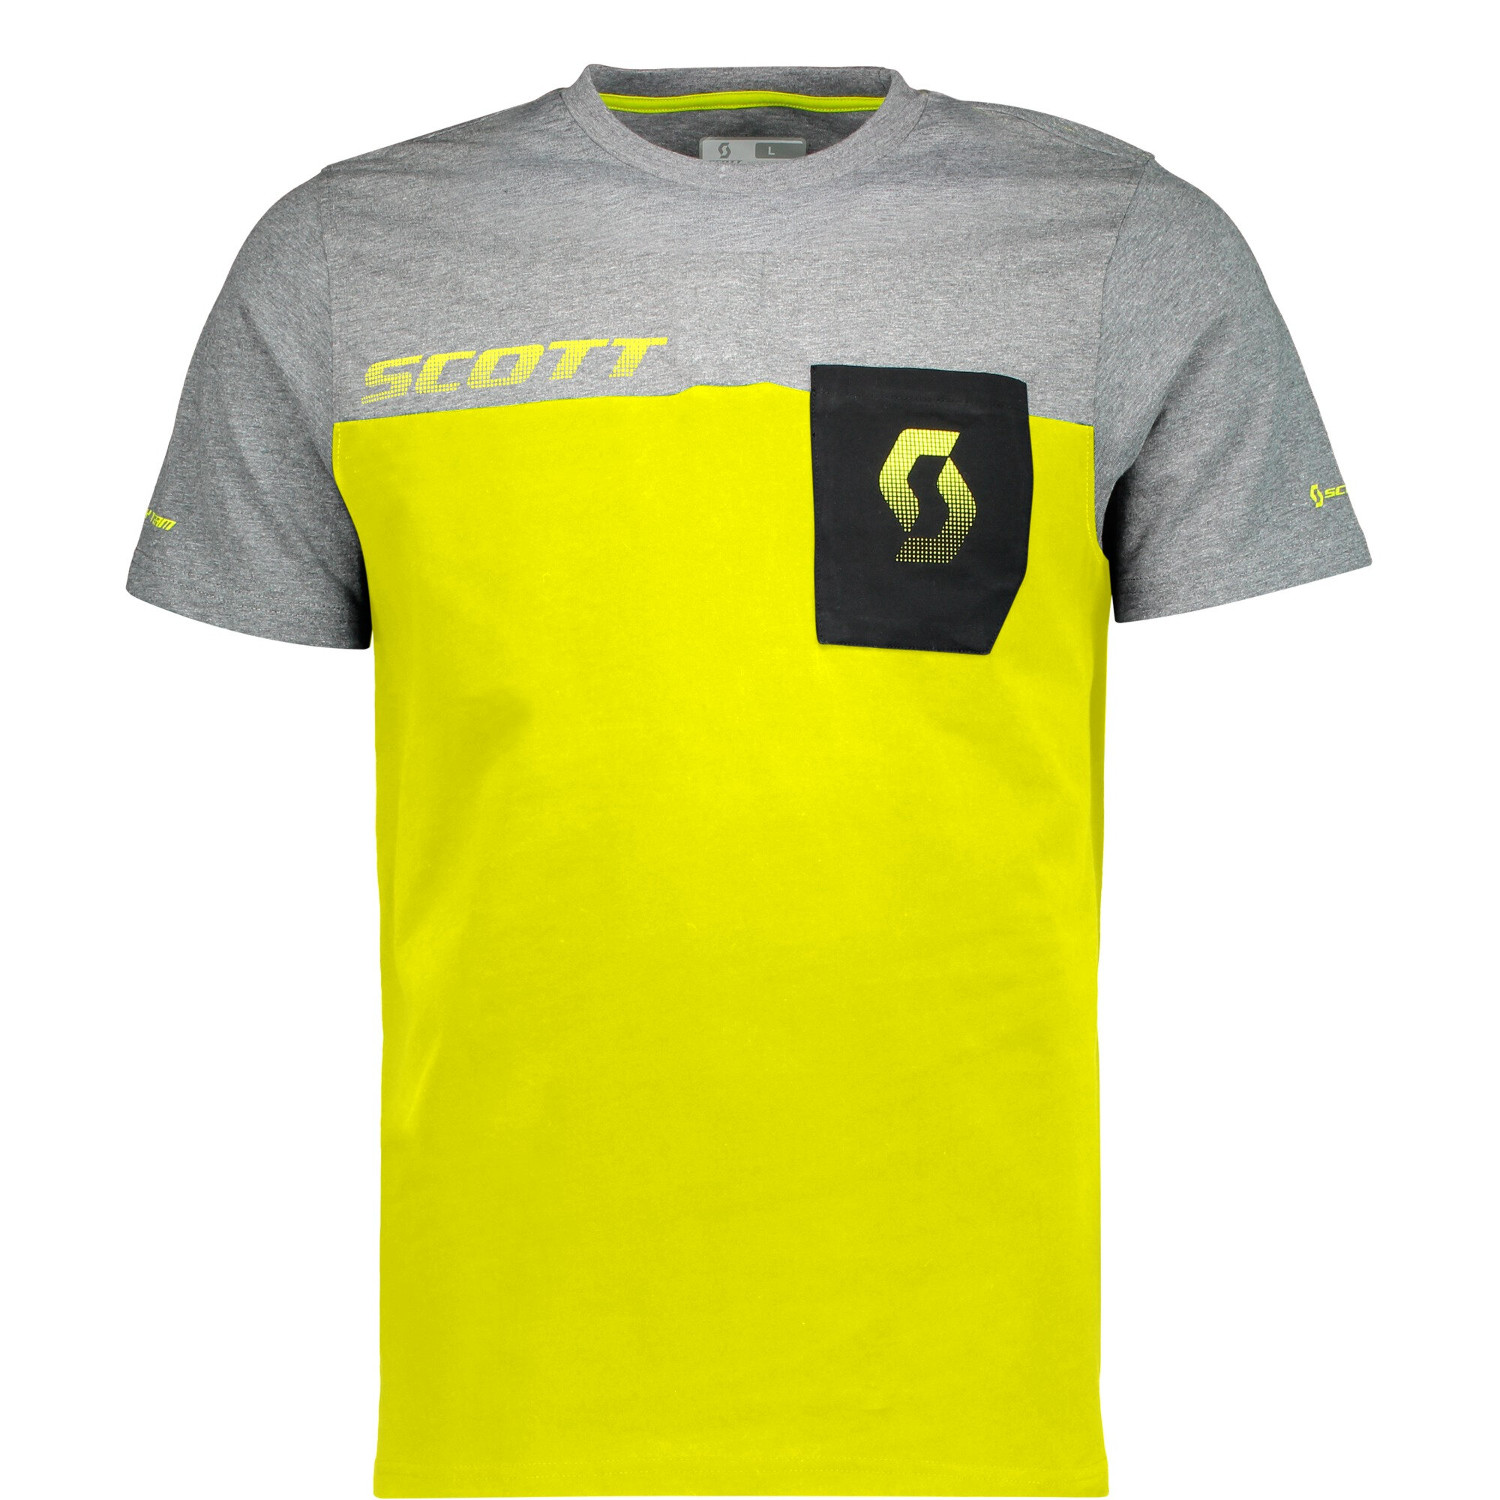 Scott T-Shirt Factory Team CO Sulphur Gelb/Dunkelgrau meliert